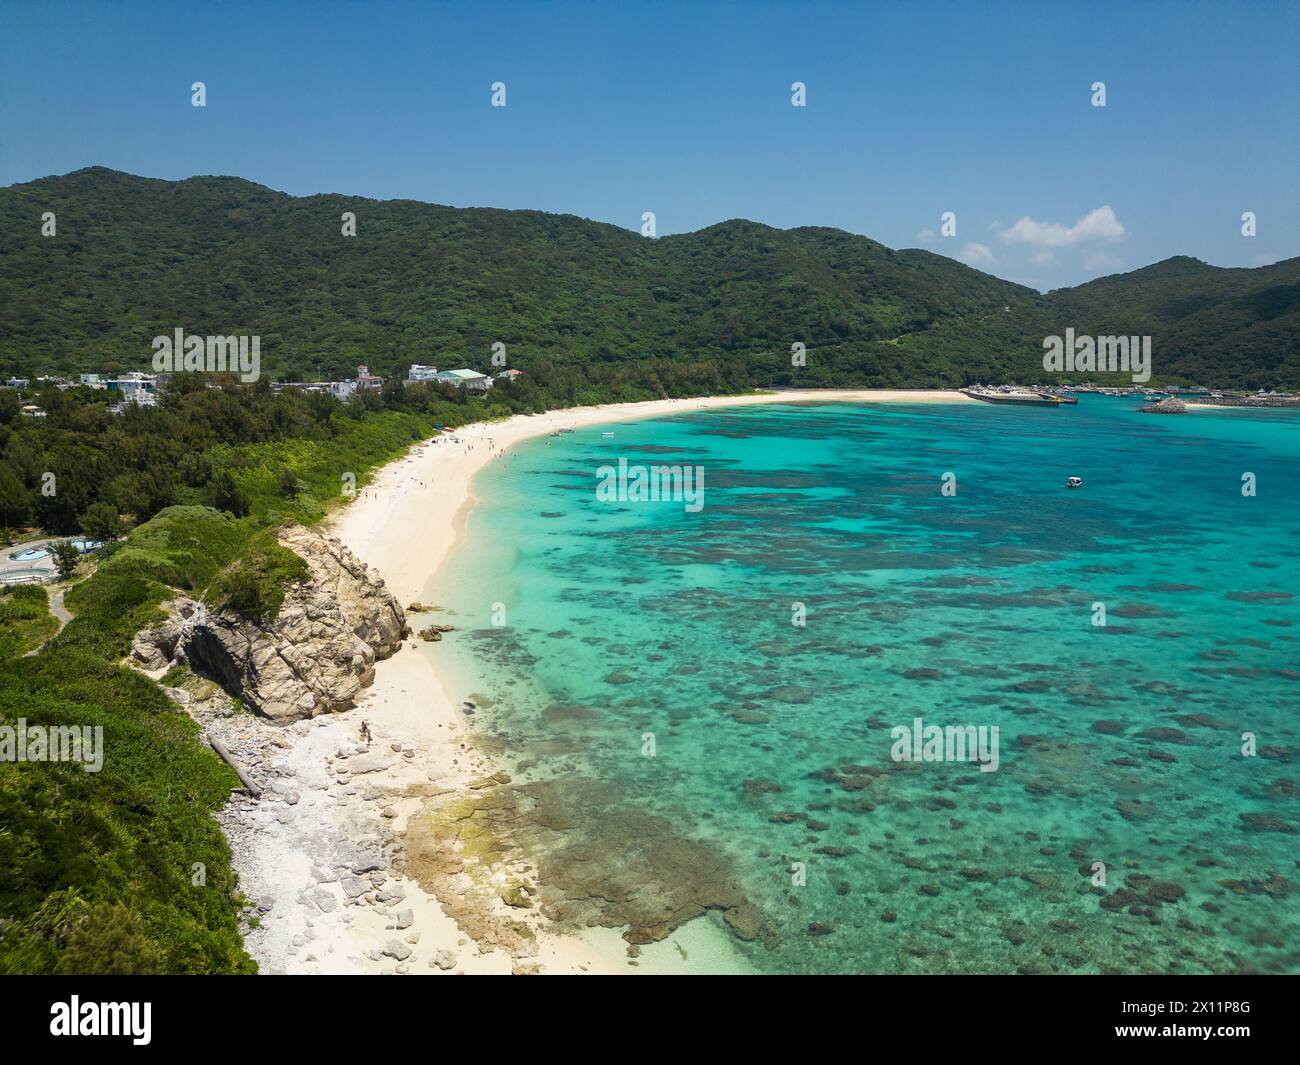 Okinawa, Japan: Luftaufnahme des Aharen Strandes auf der tropischen Insel Tokashiki in Okinawa im Pazifischen Ozean. Stockfoto